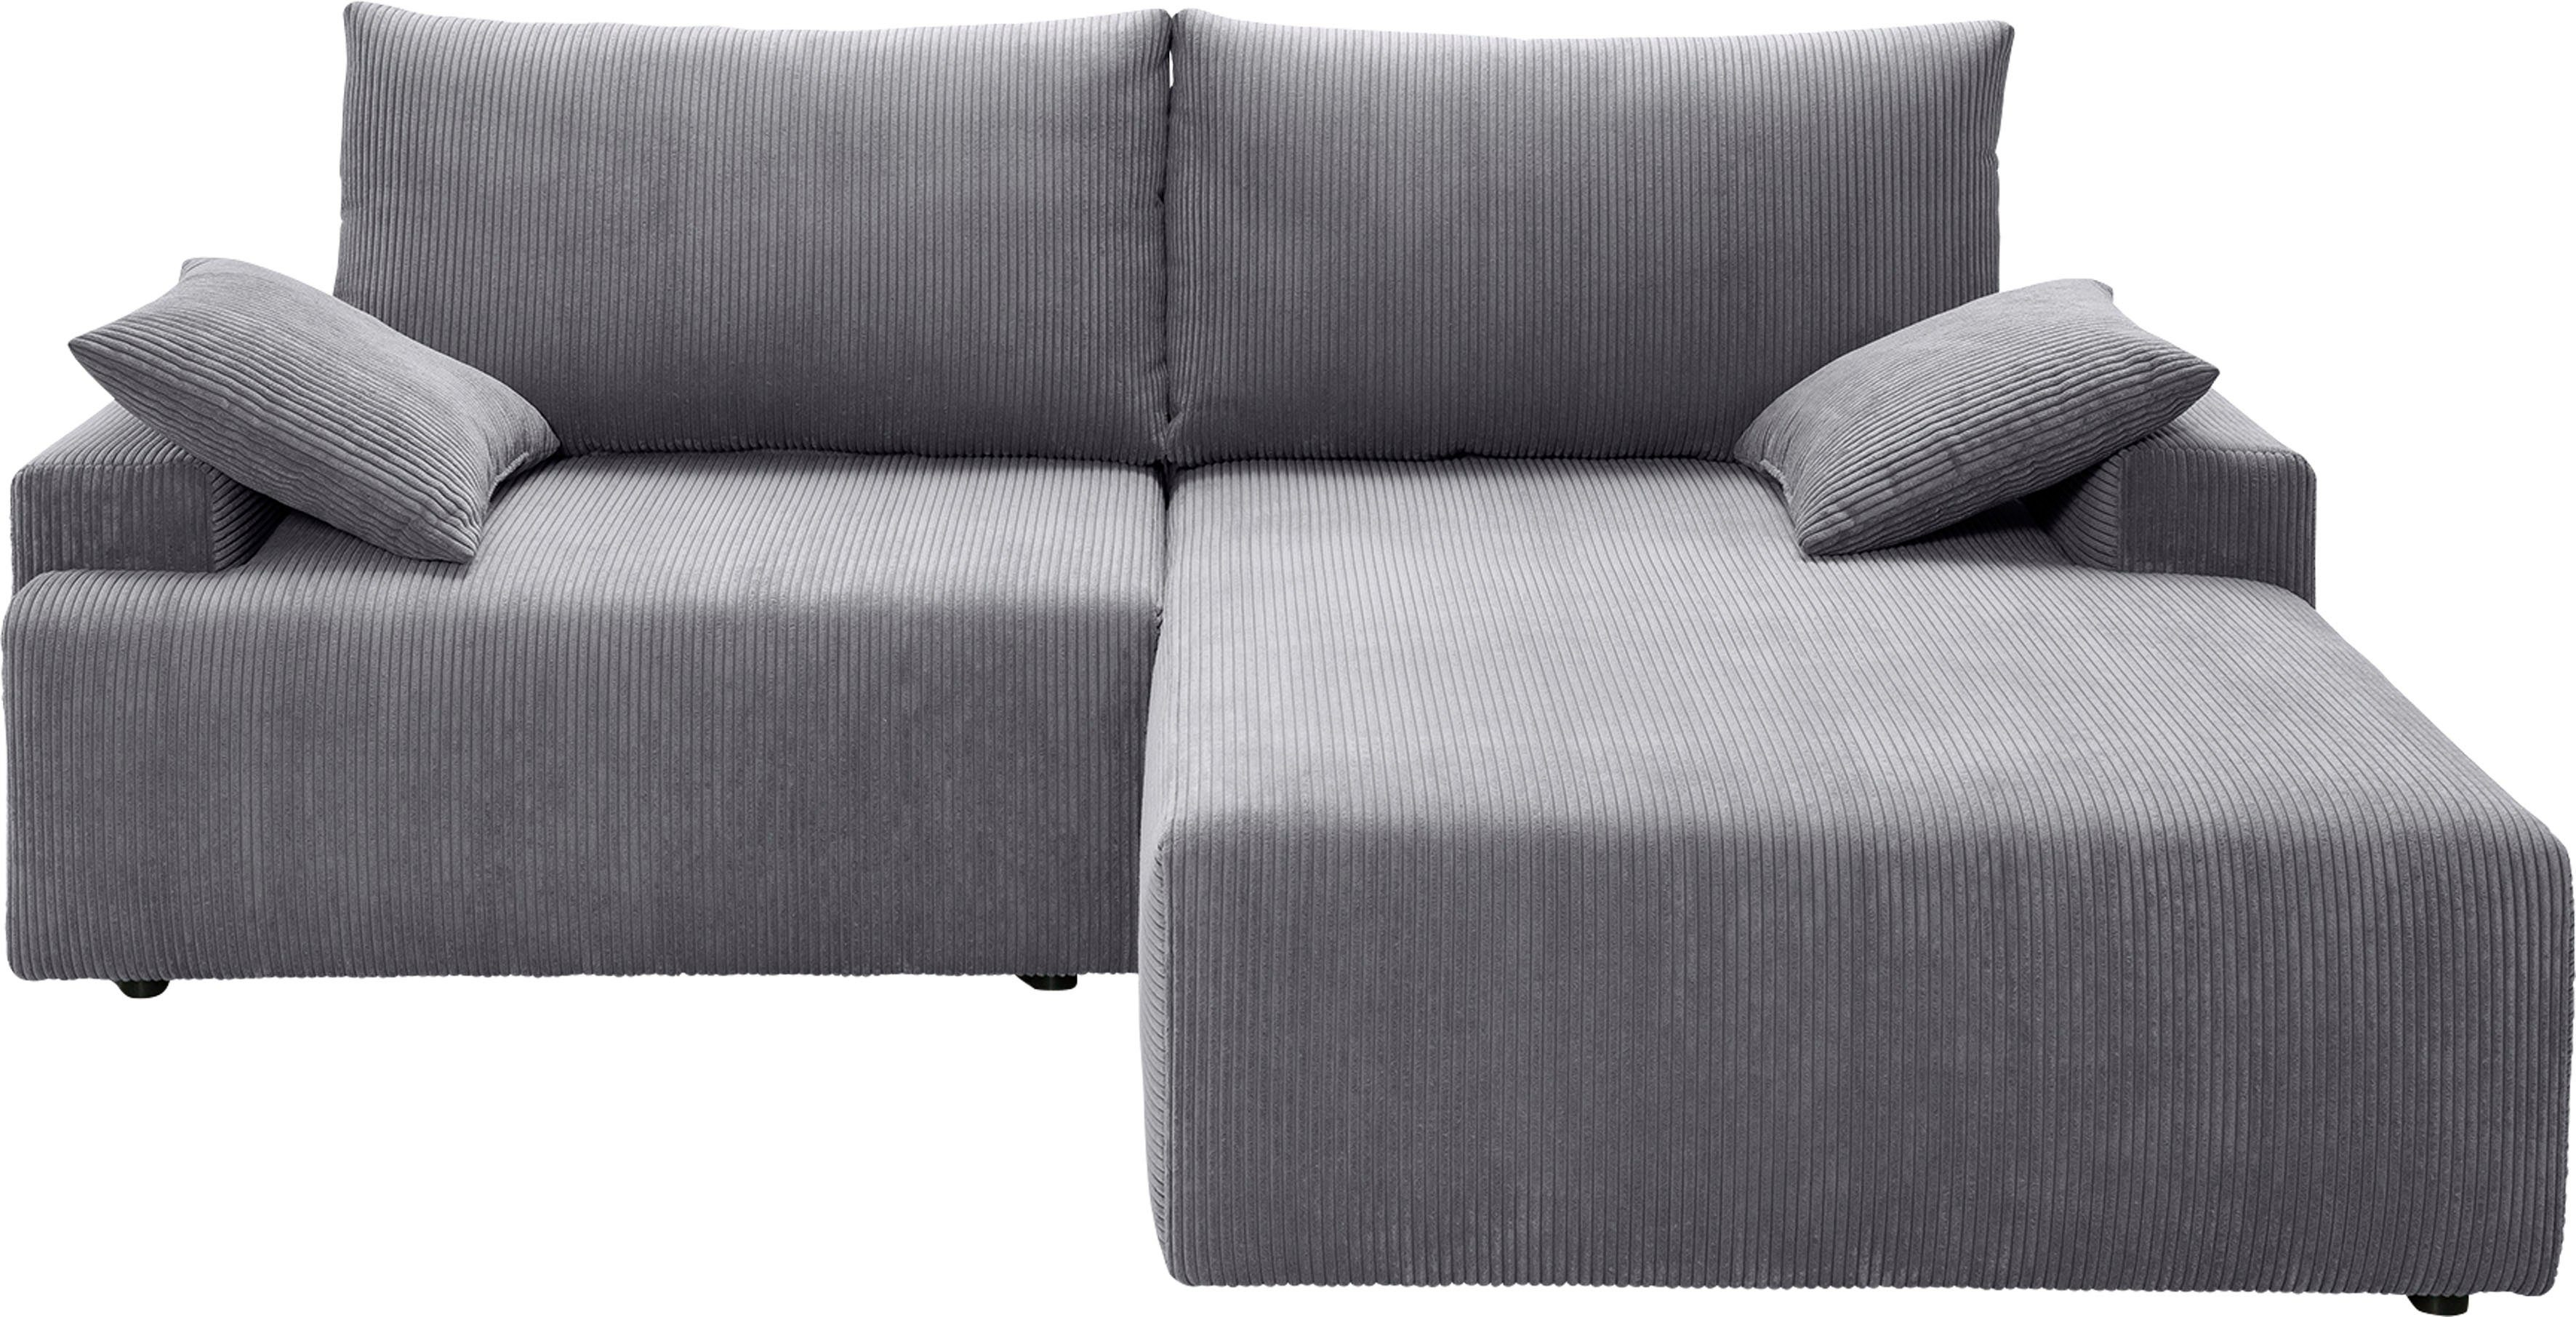 exxpo - sofa inklusive verschiedenen Bettfunktion grey in und Ecksofa Cord-Farben Bettkasten Orinoko, fashion